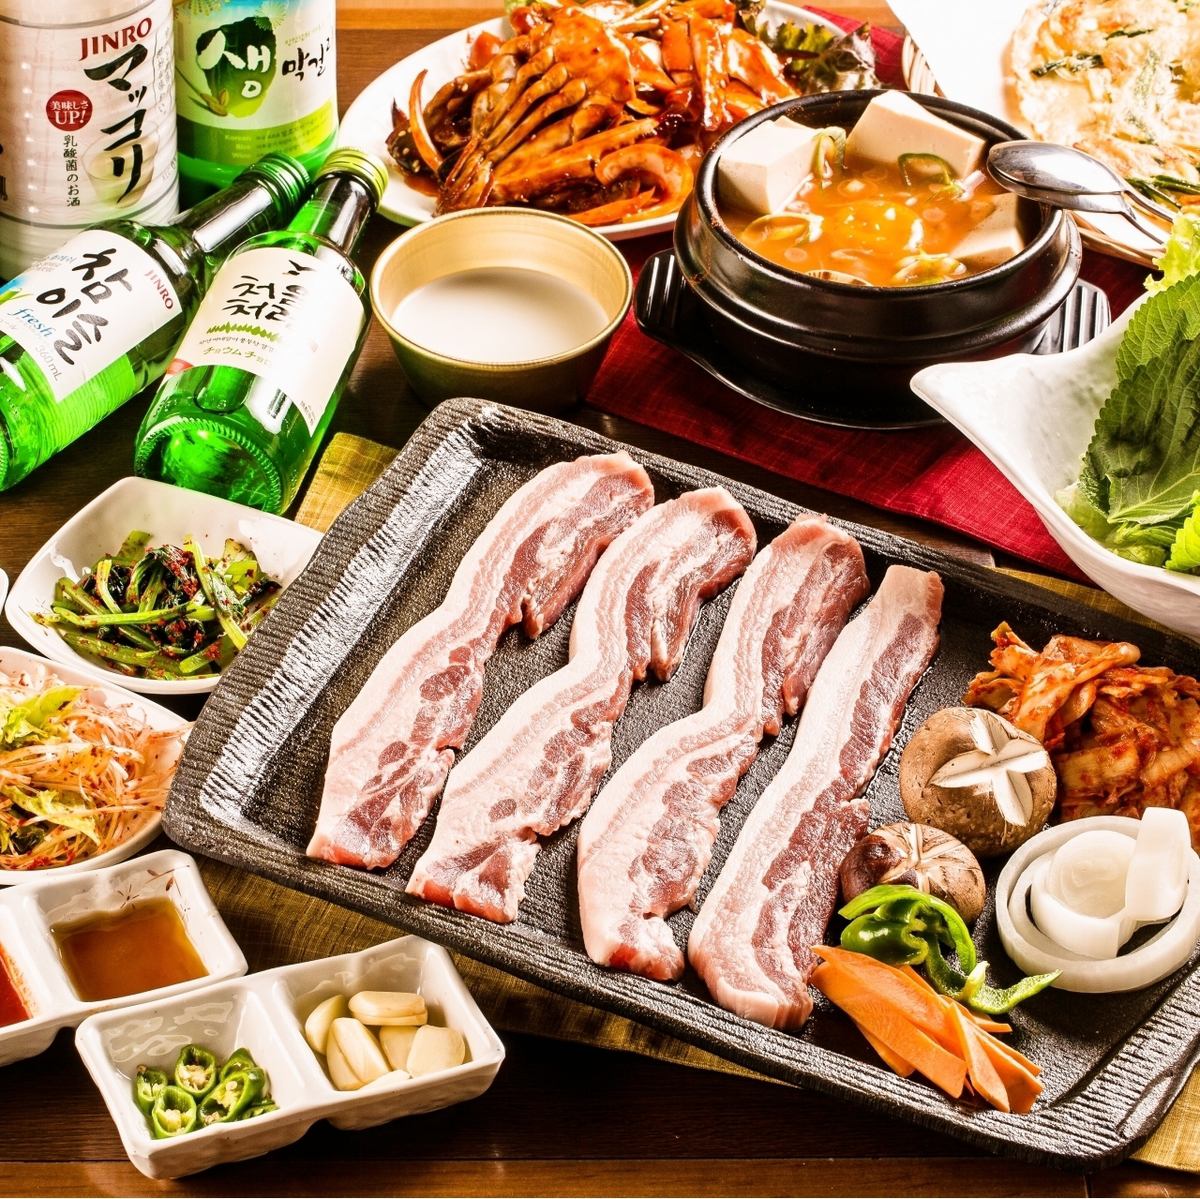 30人以上團體可預約！快來嚐嚐不用筷子的精緻韓國料理吧！